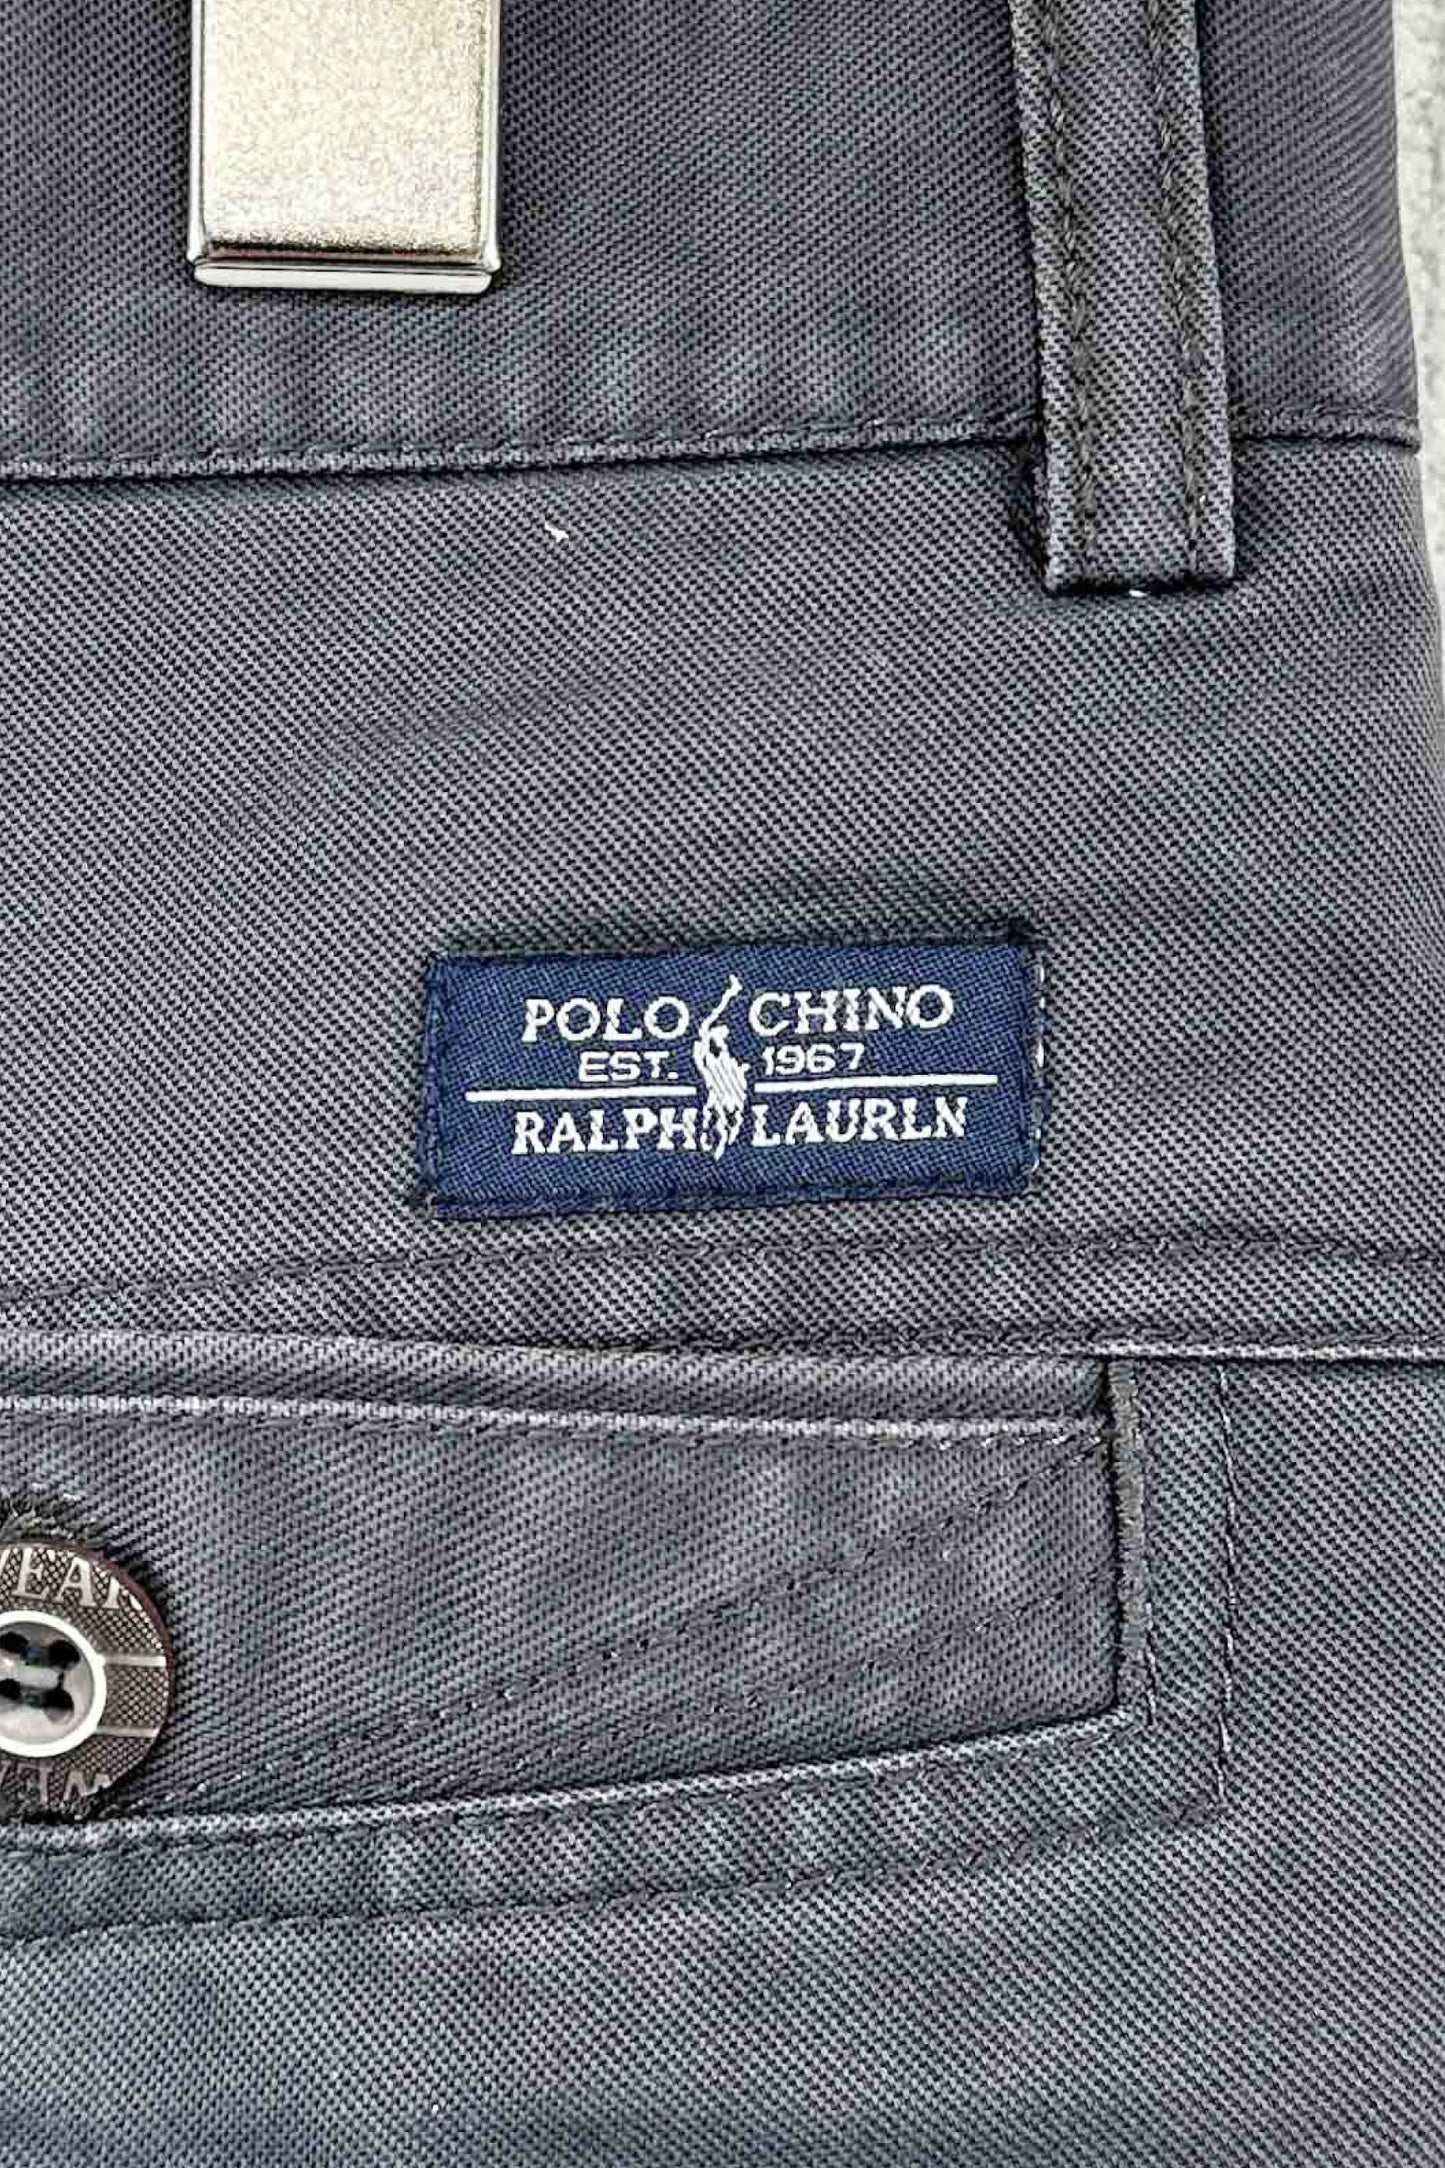 POLO CHINO RALPH LAUREN 裤子